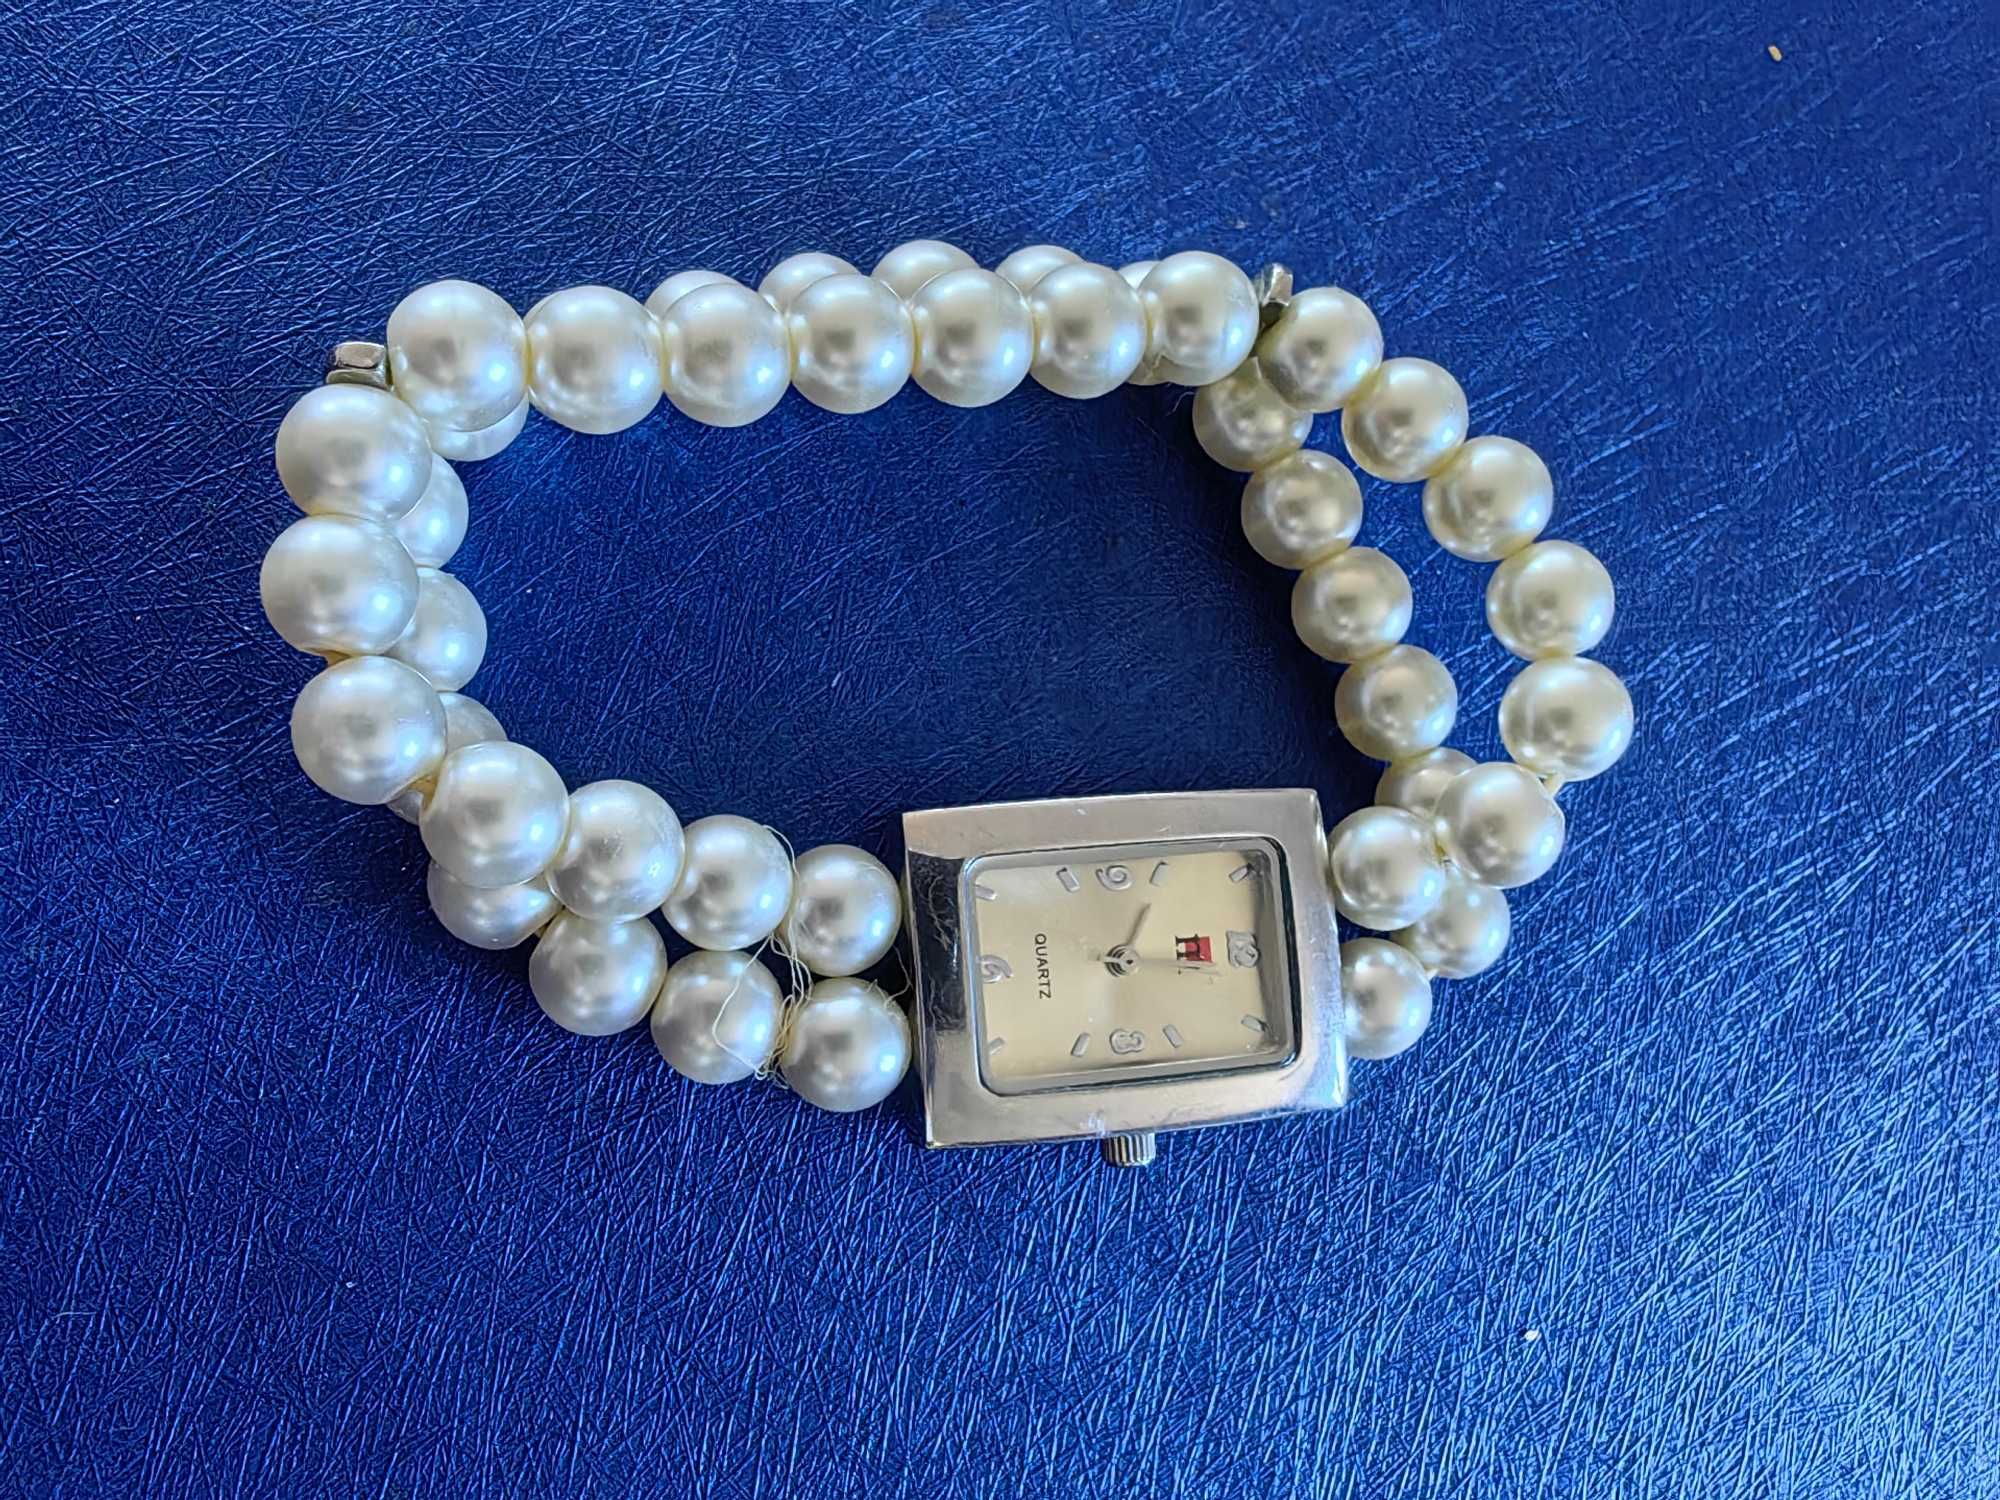 Damski zegarek Japan Movt firmy M quartz - bransoleta z pereł